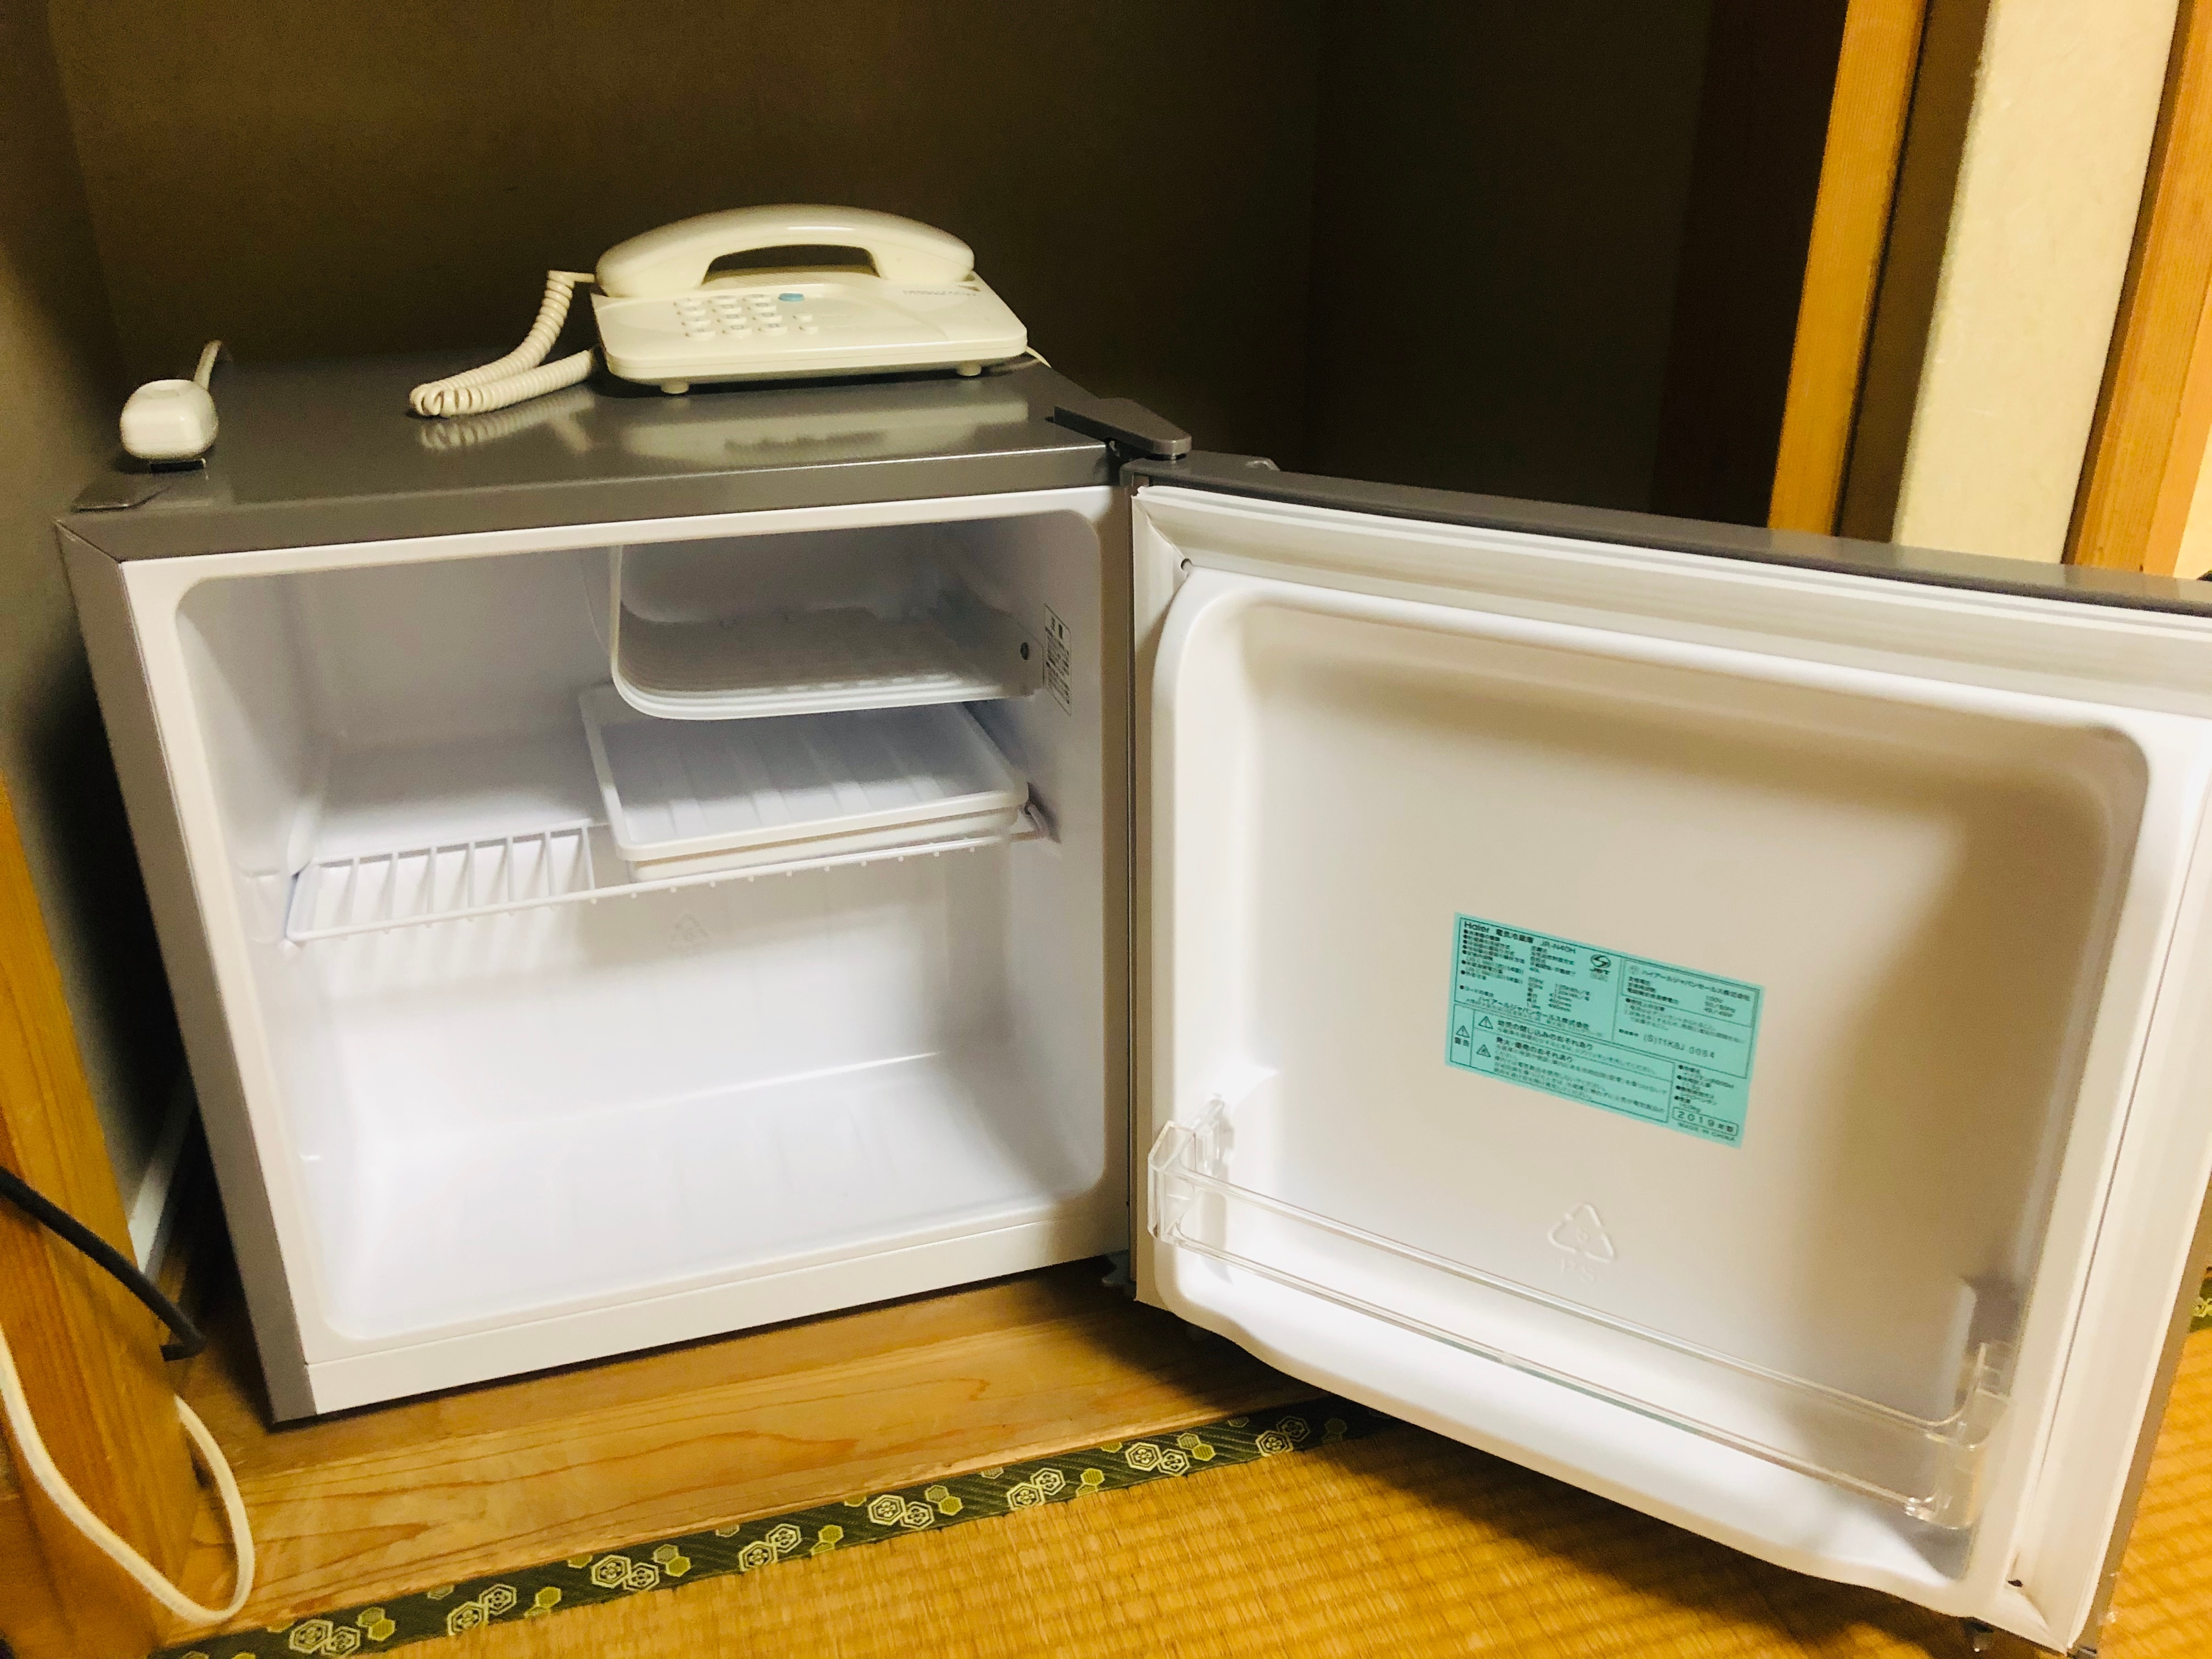 【냉장고】일본식 방 냉동고 첨부 펠티어식 냉장고를 처분해, 모두 컴프레서 직냉식으로 바꿨습니다.